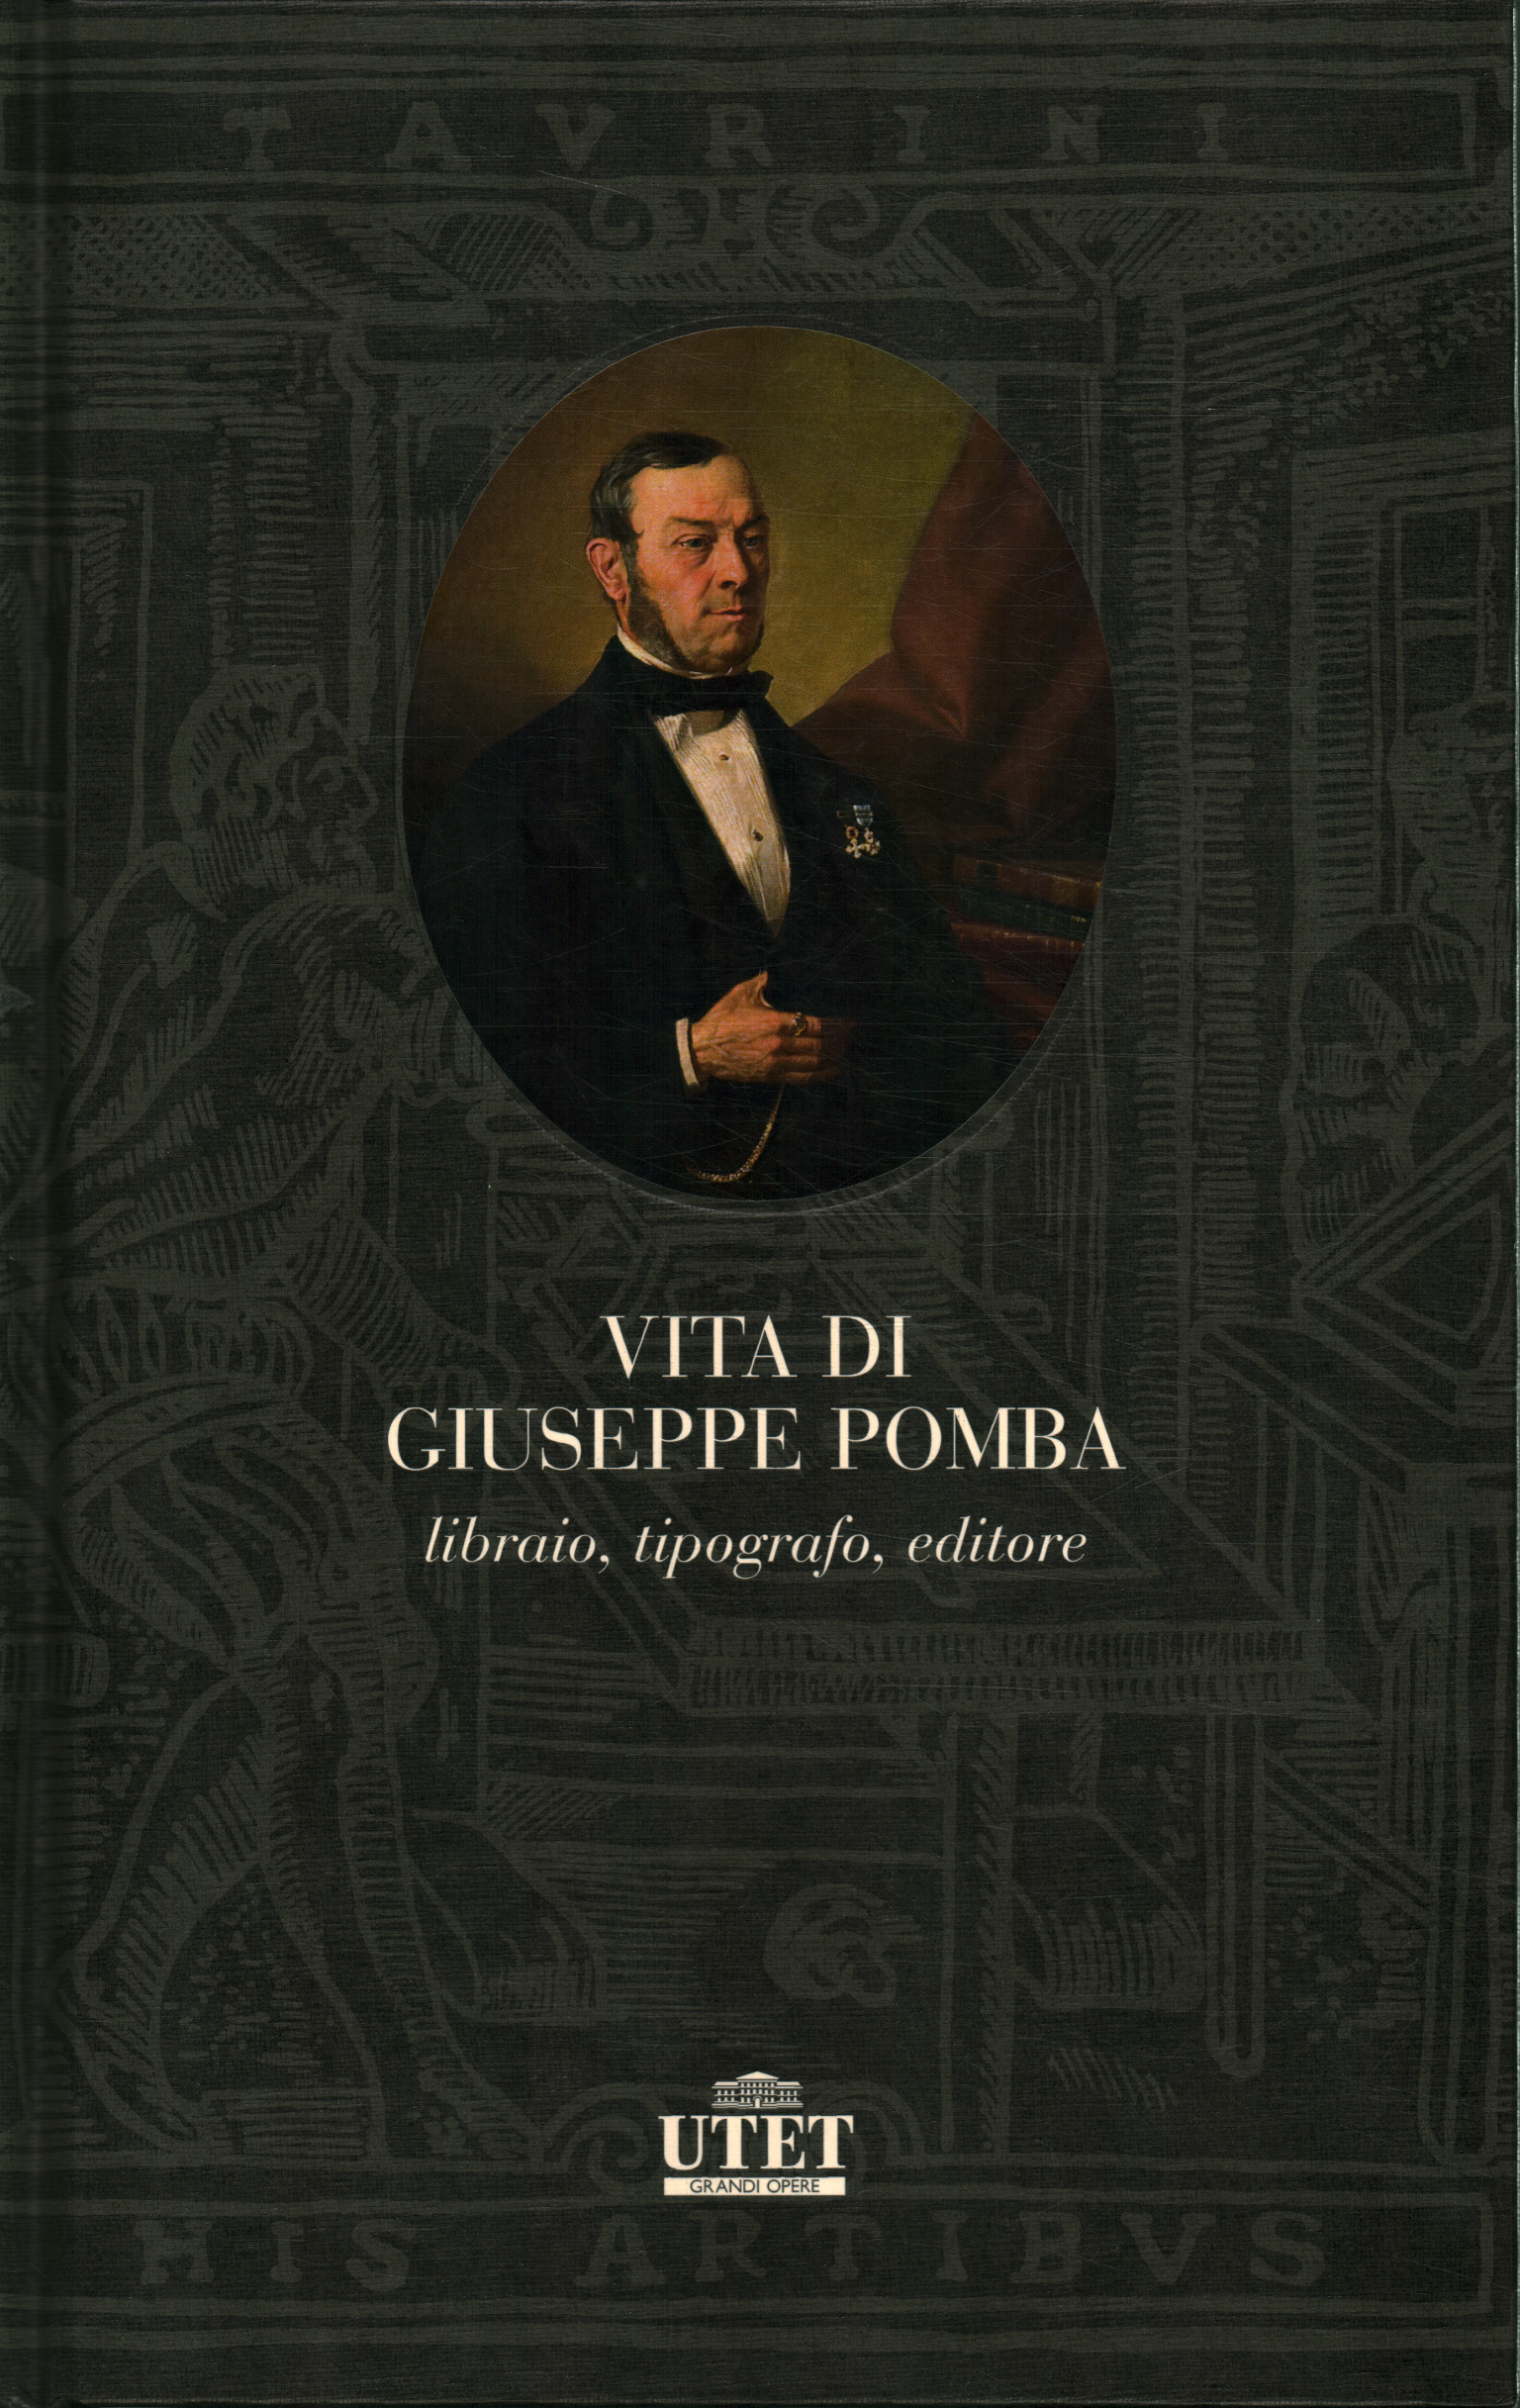 Vida de Giuseppe Pomba